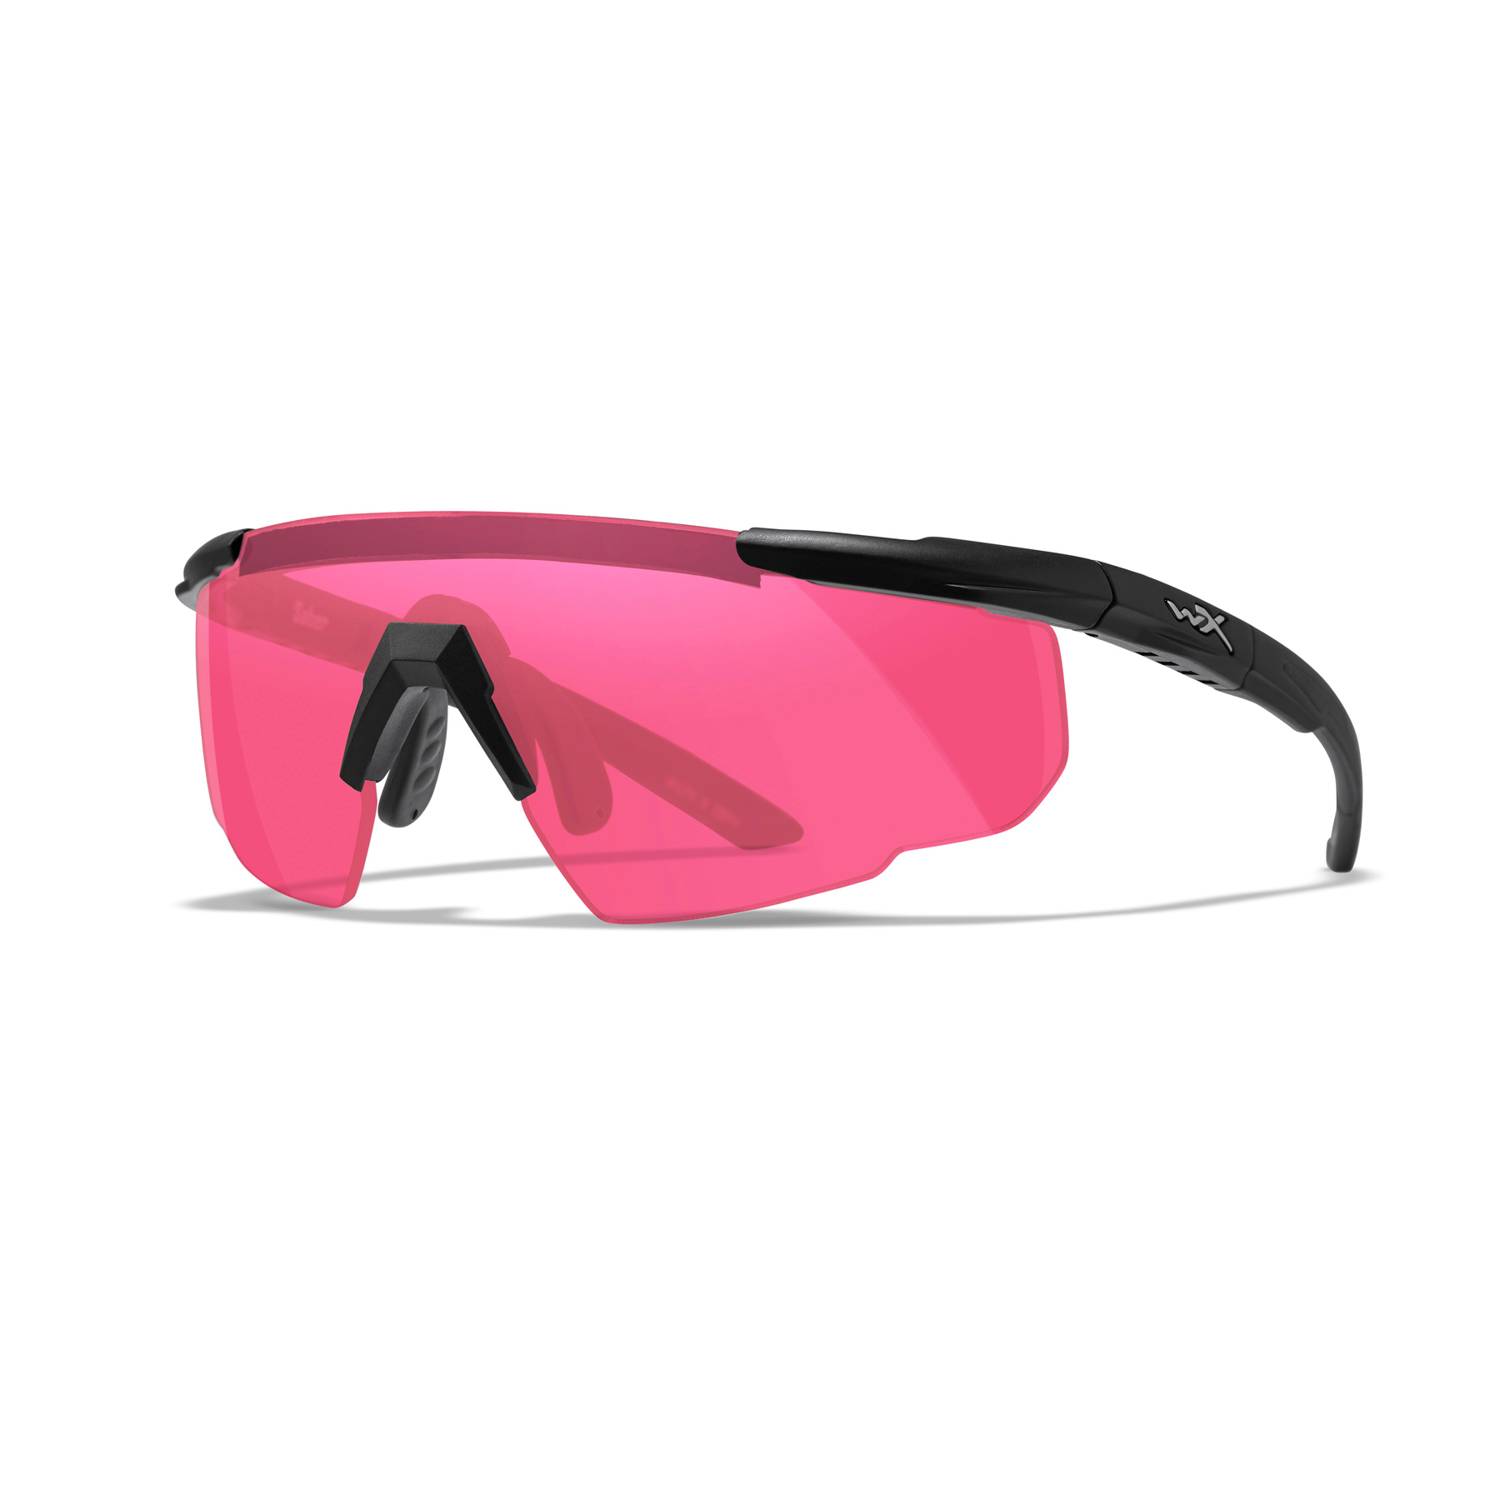 Wiley X Eyewear 309 Saber Advanced Safety Glasses Matte Black frame 3 color lens 